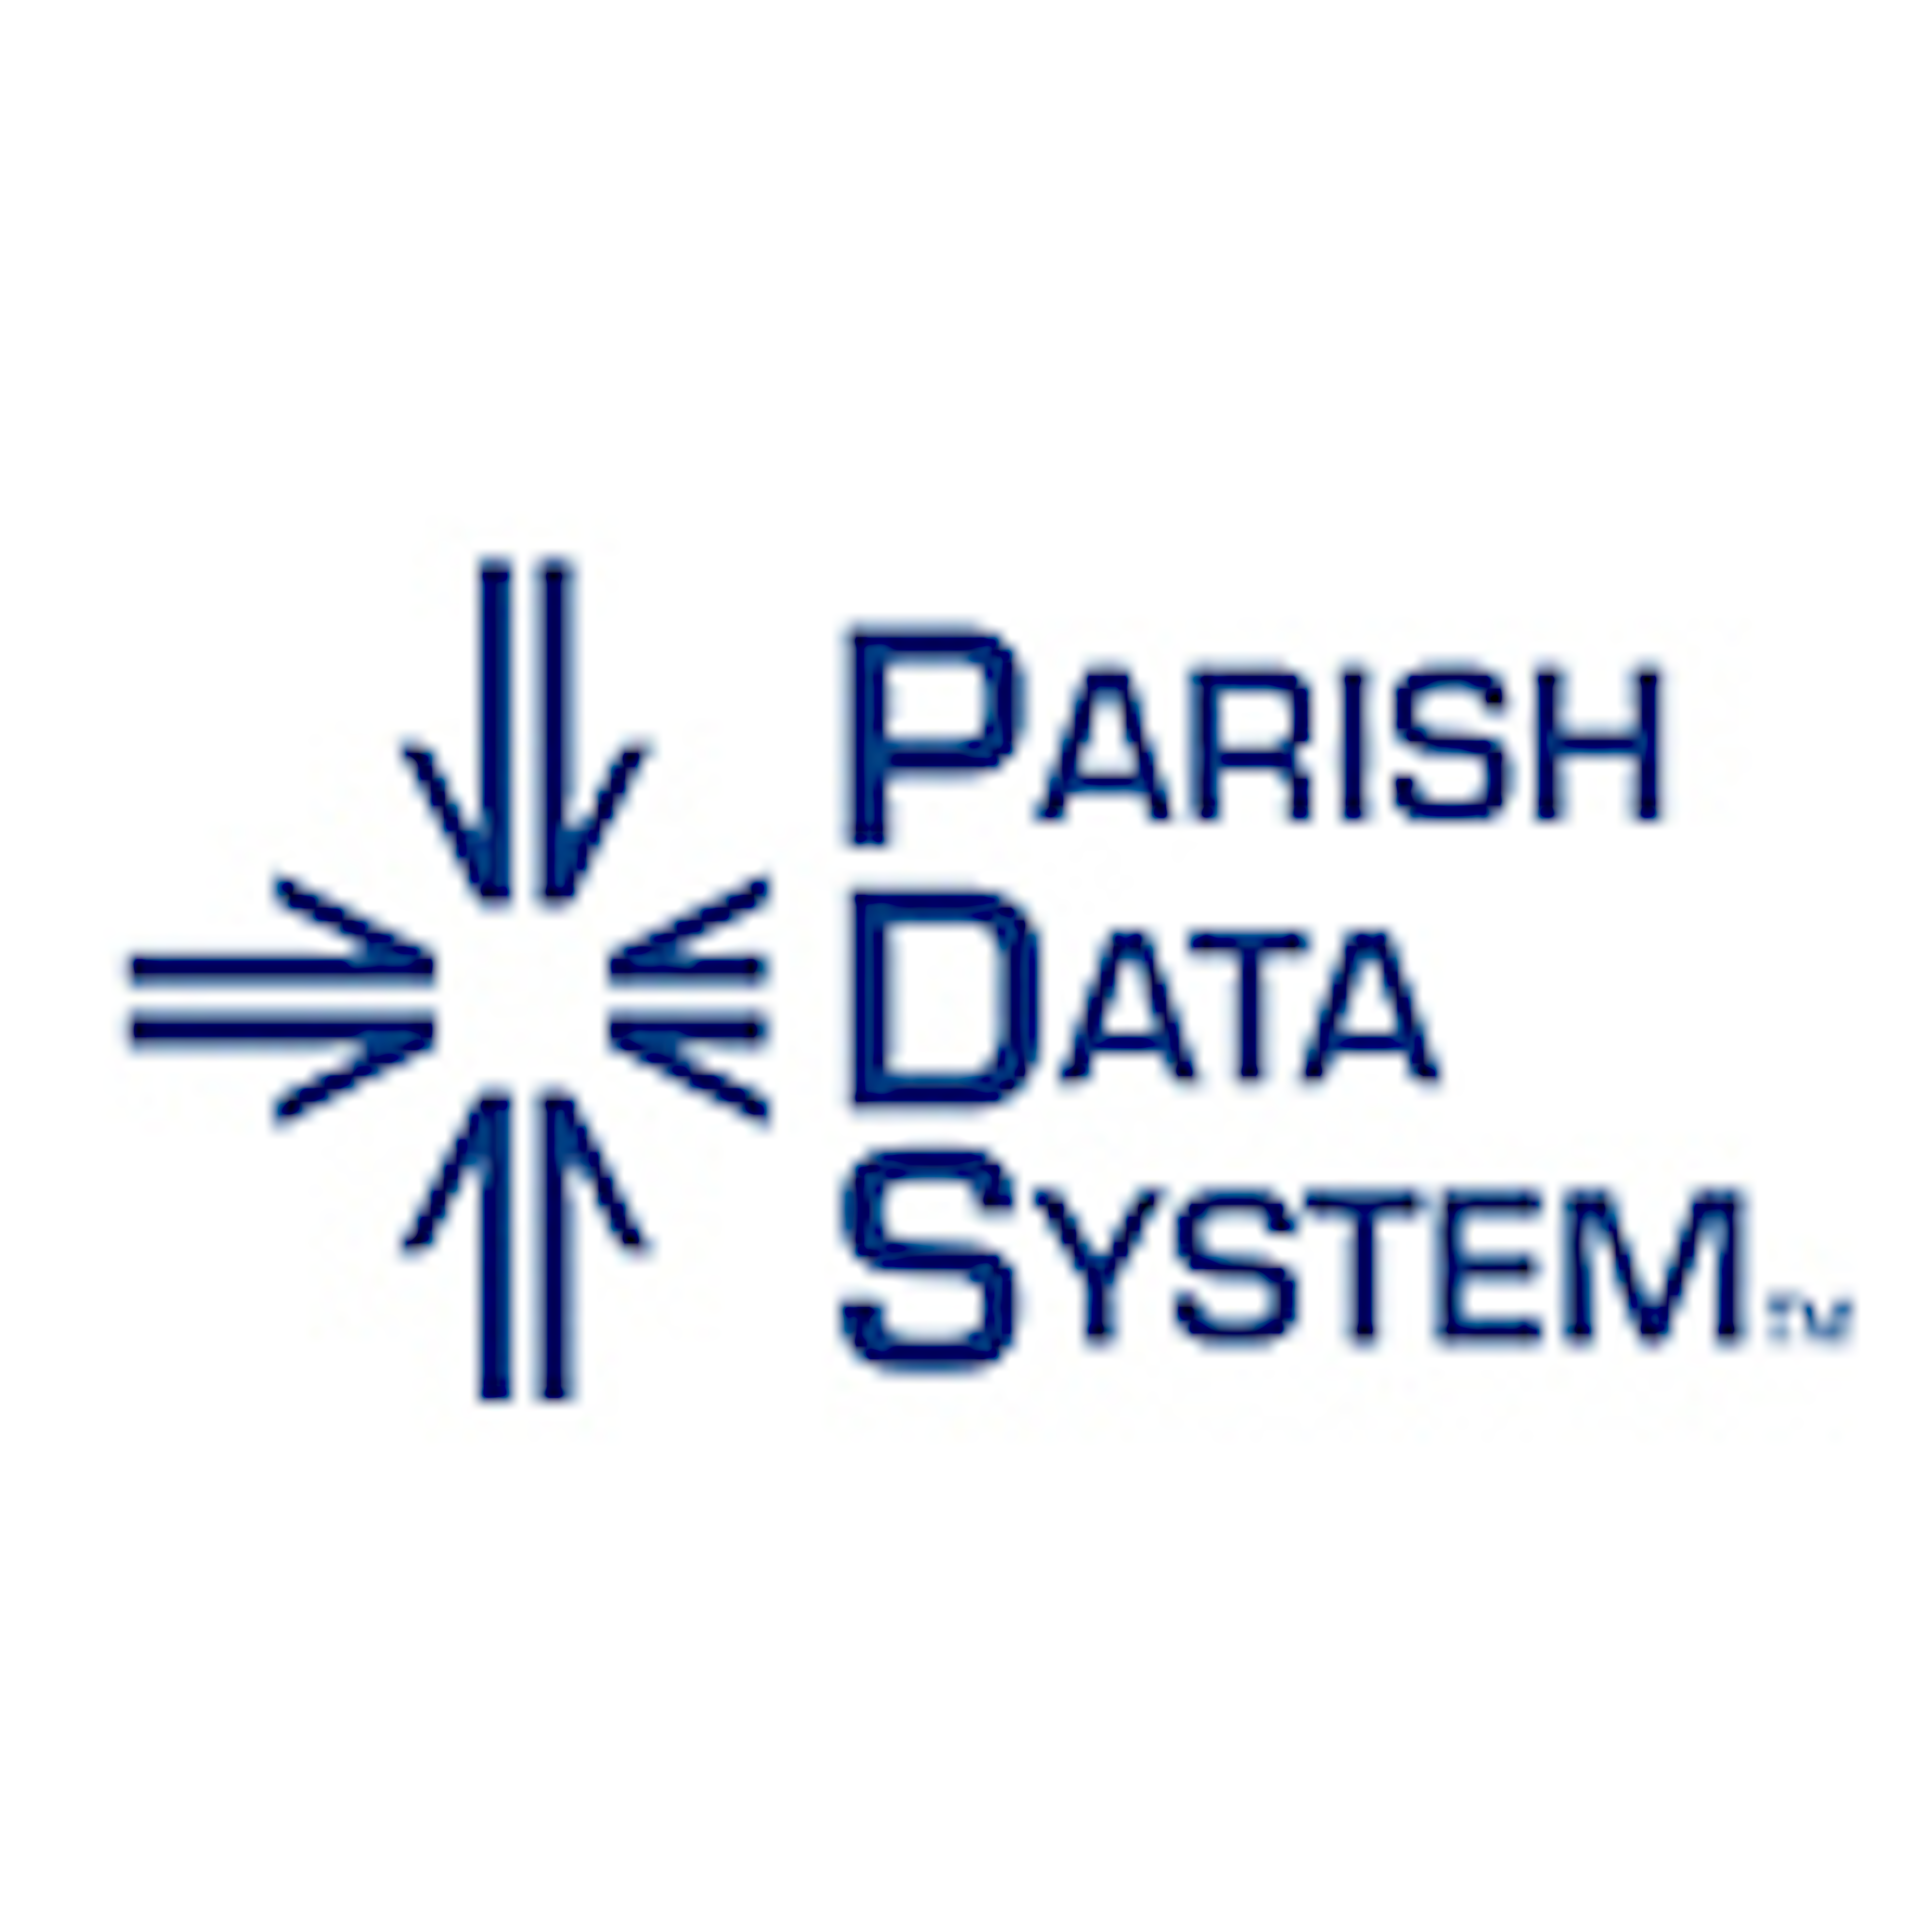 Parish Data System Logo